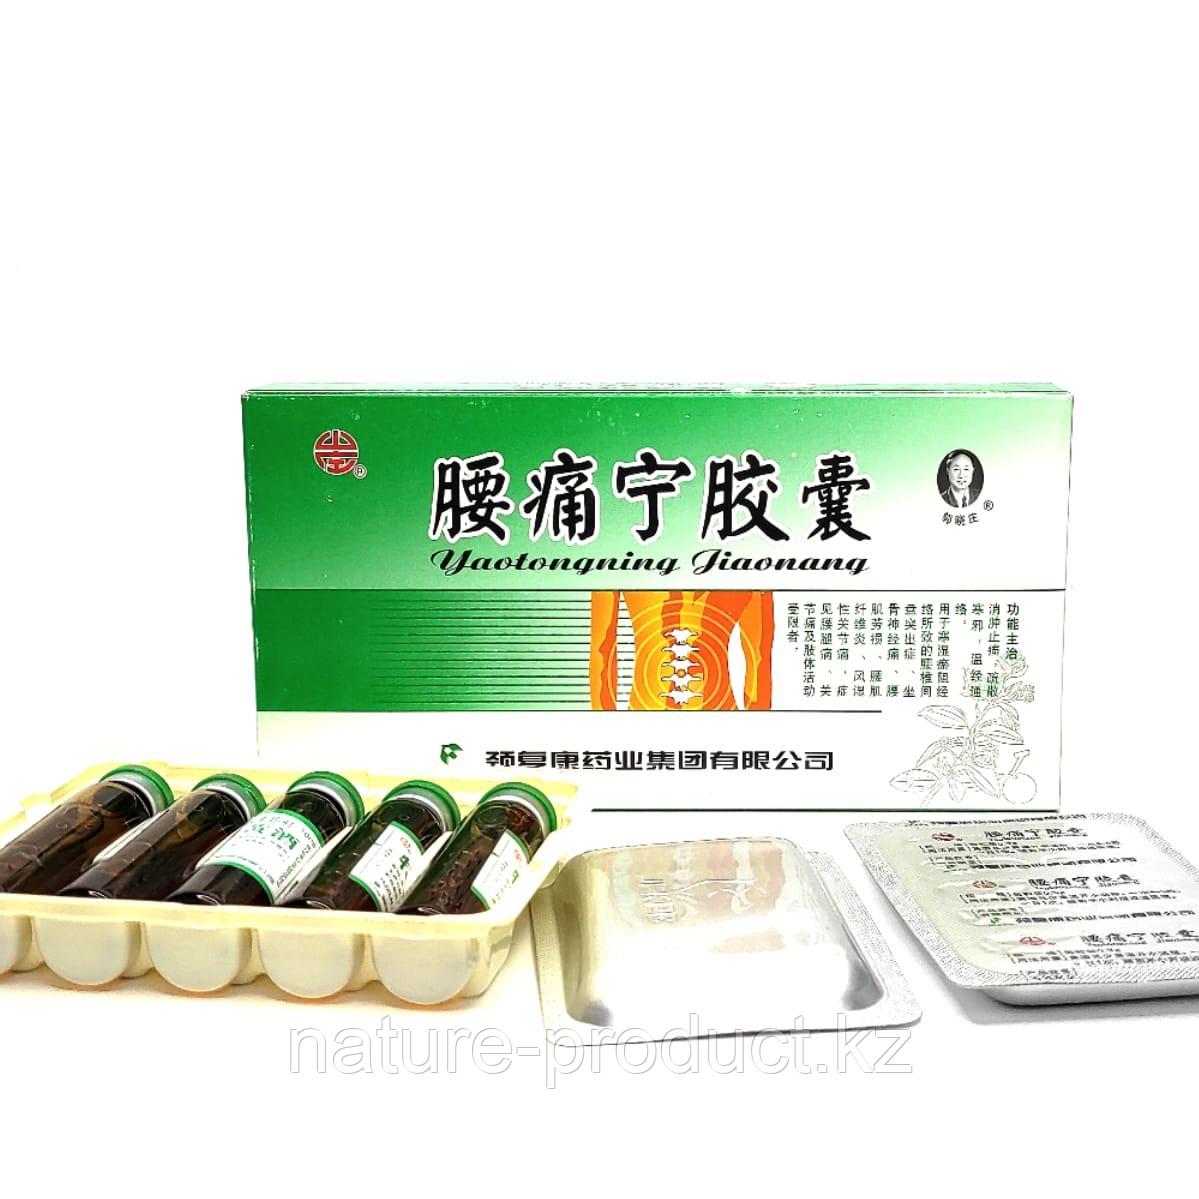 Капсулы+Эликсир для снятия болей в пояснице "Яотуннин" (Yaotongning Jiaonang) 20 капсул +5 флаконов